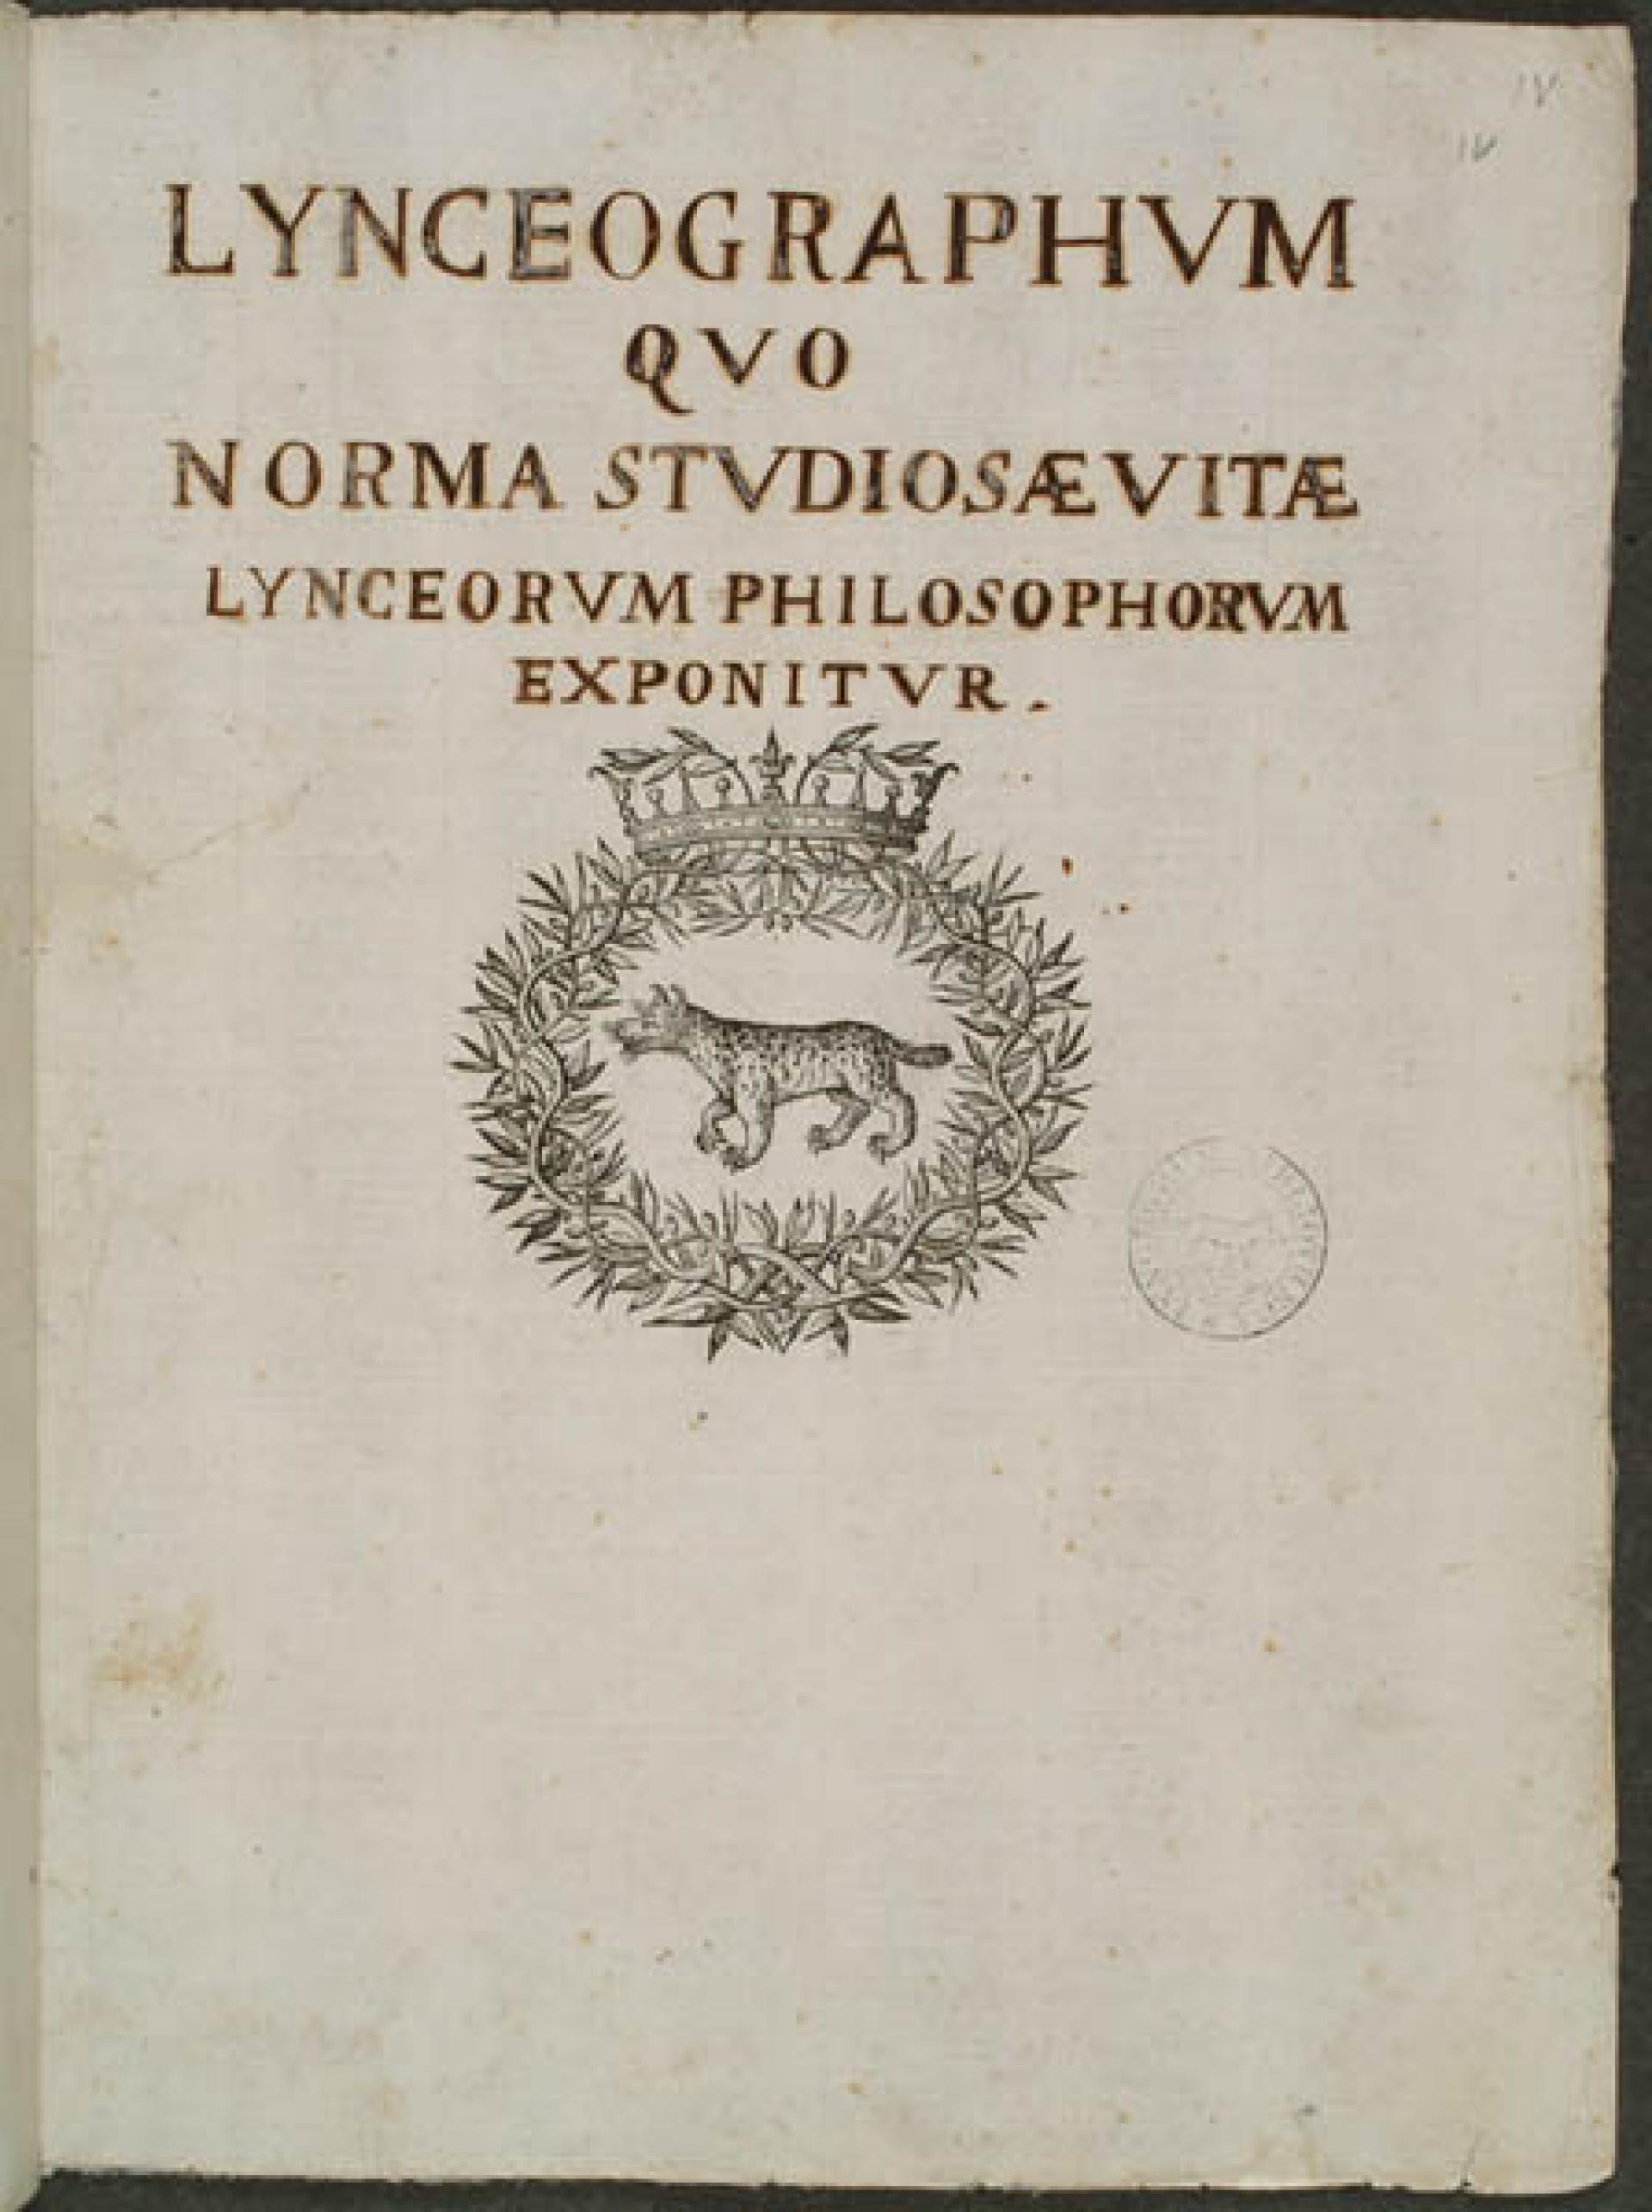 Lo statuto della prima Accademia dei Lincei, fondata da Federico Cesi nel 1603.